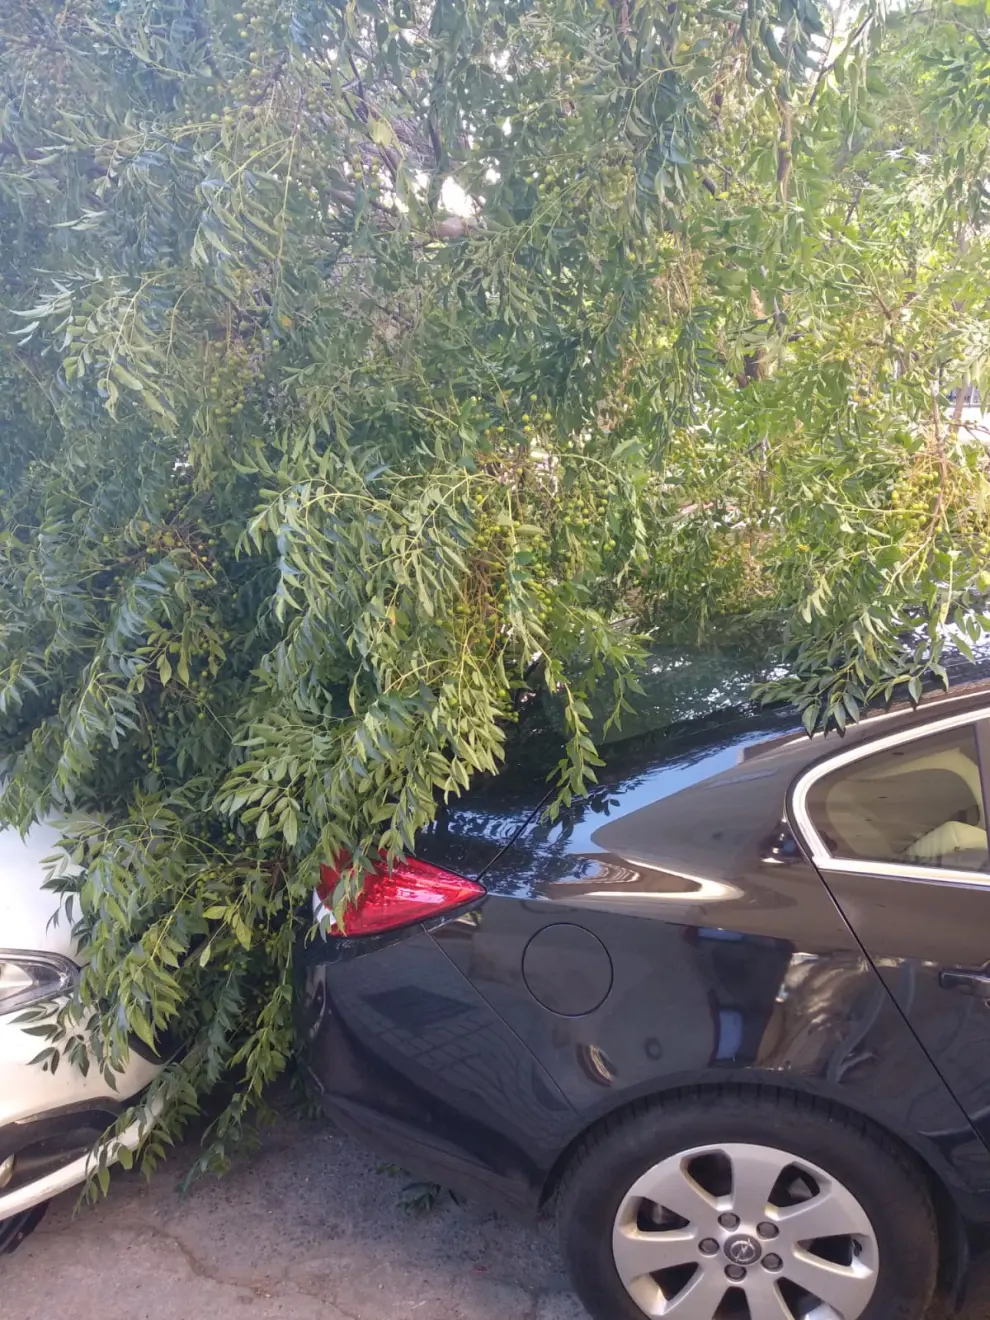 El árbol ha caído en la plaza de San Francisco sobre dos coches aparcados.